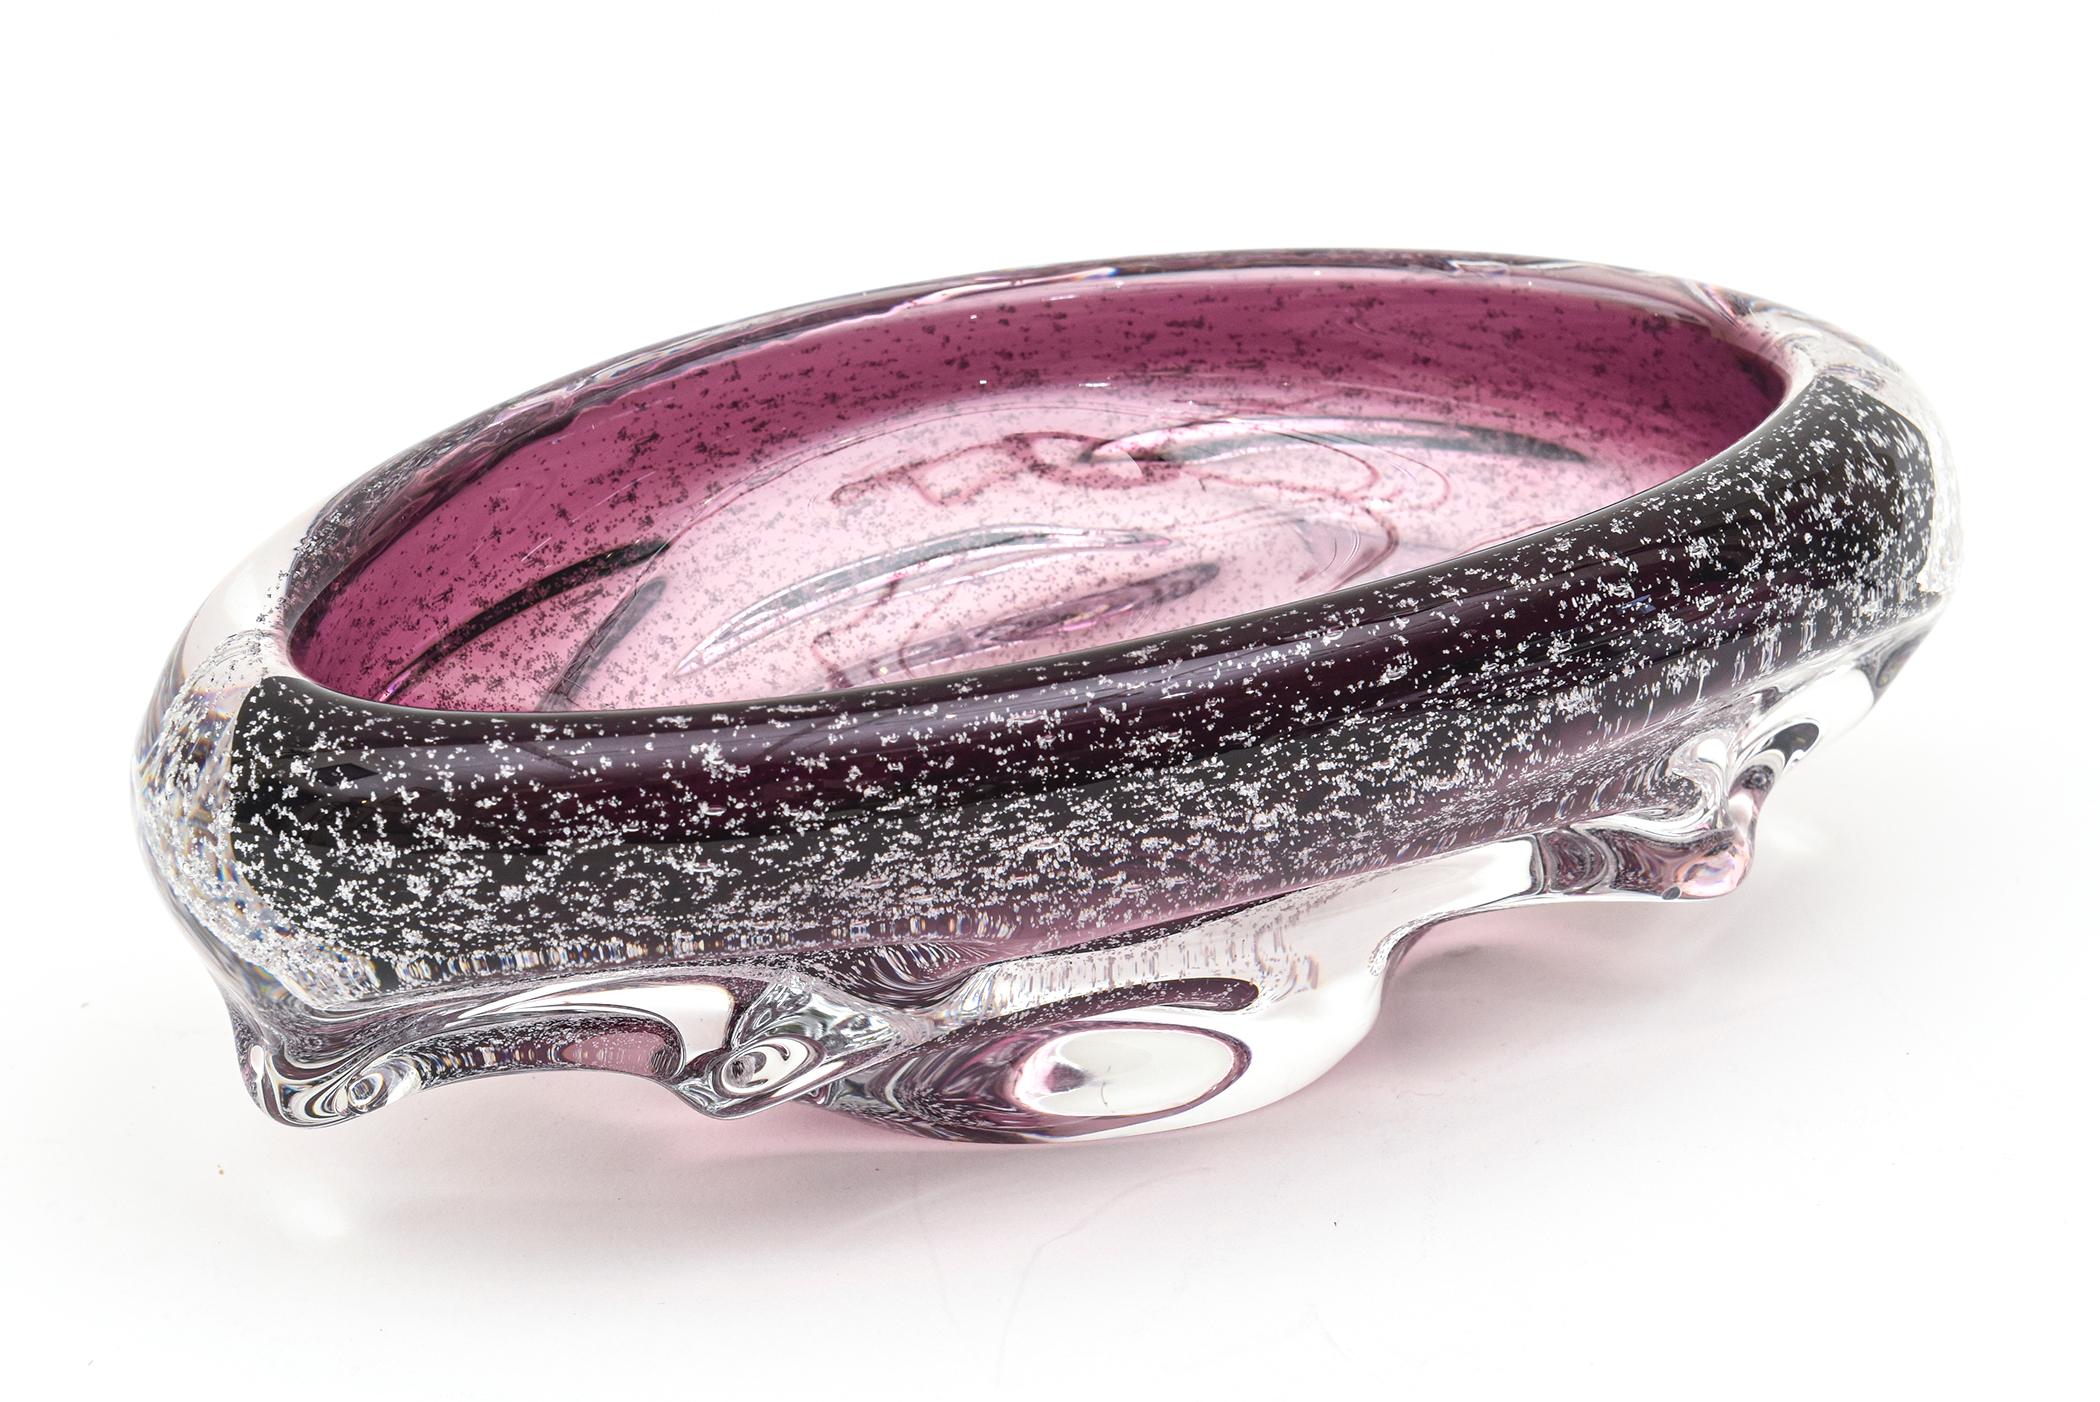 La magnifique couleur violette et la forme de ce bol ovale en verre soufflé à la main à Murano ressemble à un mini vaisseau spatial avec les centaines de petites bulles à l'intérieur qui ressemblent à des feuilles d'argent. Cette technique s'appelle